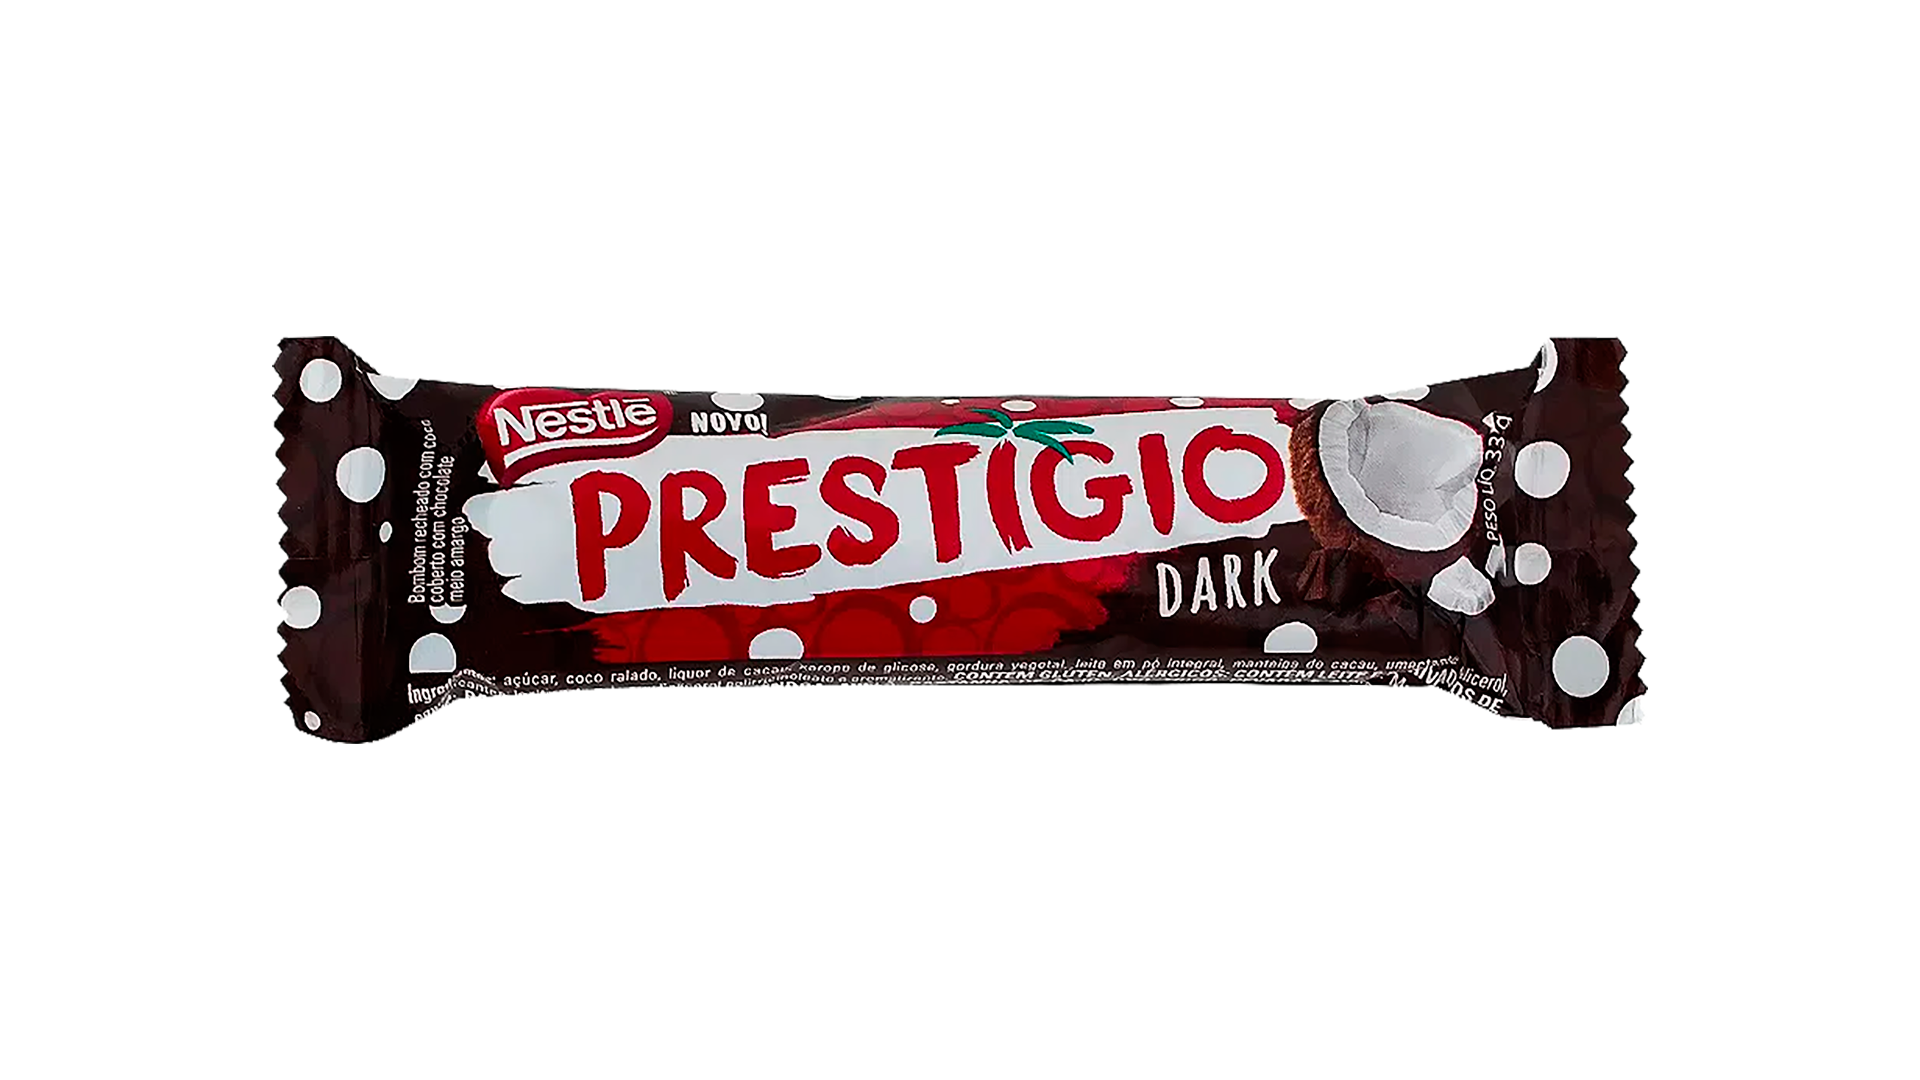 NESTLE - Tablette de chocolat noir "Prestigio" - 30g - VENTE FINALE - EXPIREE ou PROCHE DE L'EXPIRATION